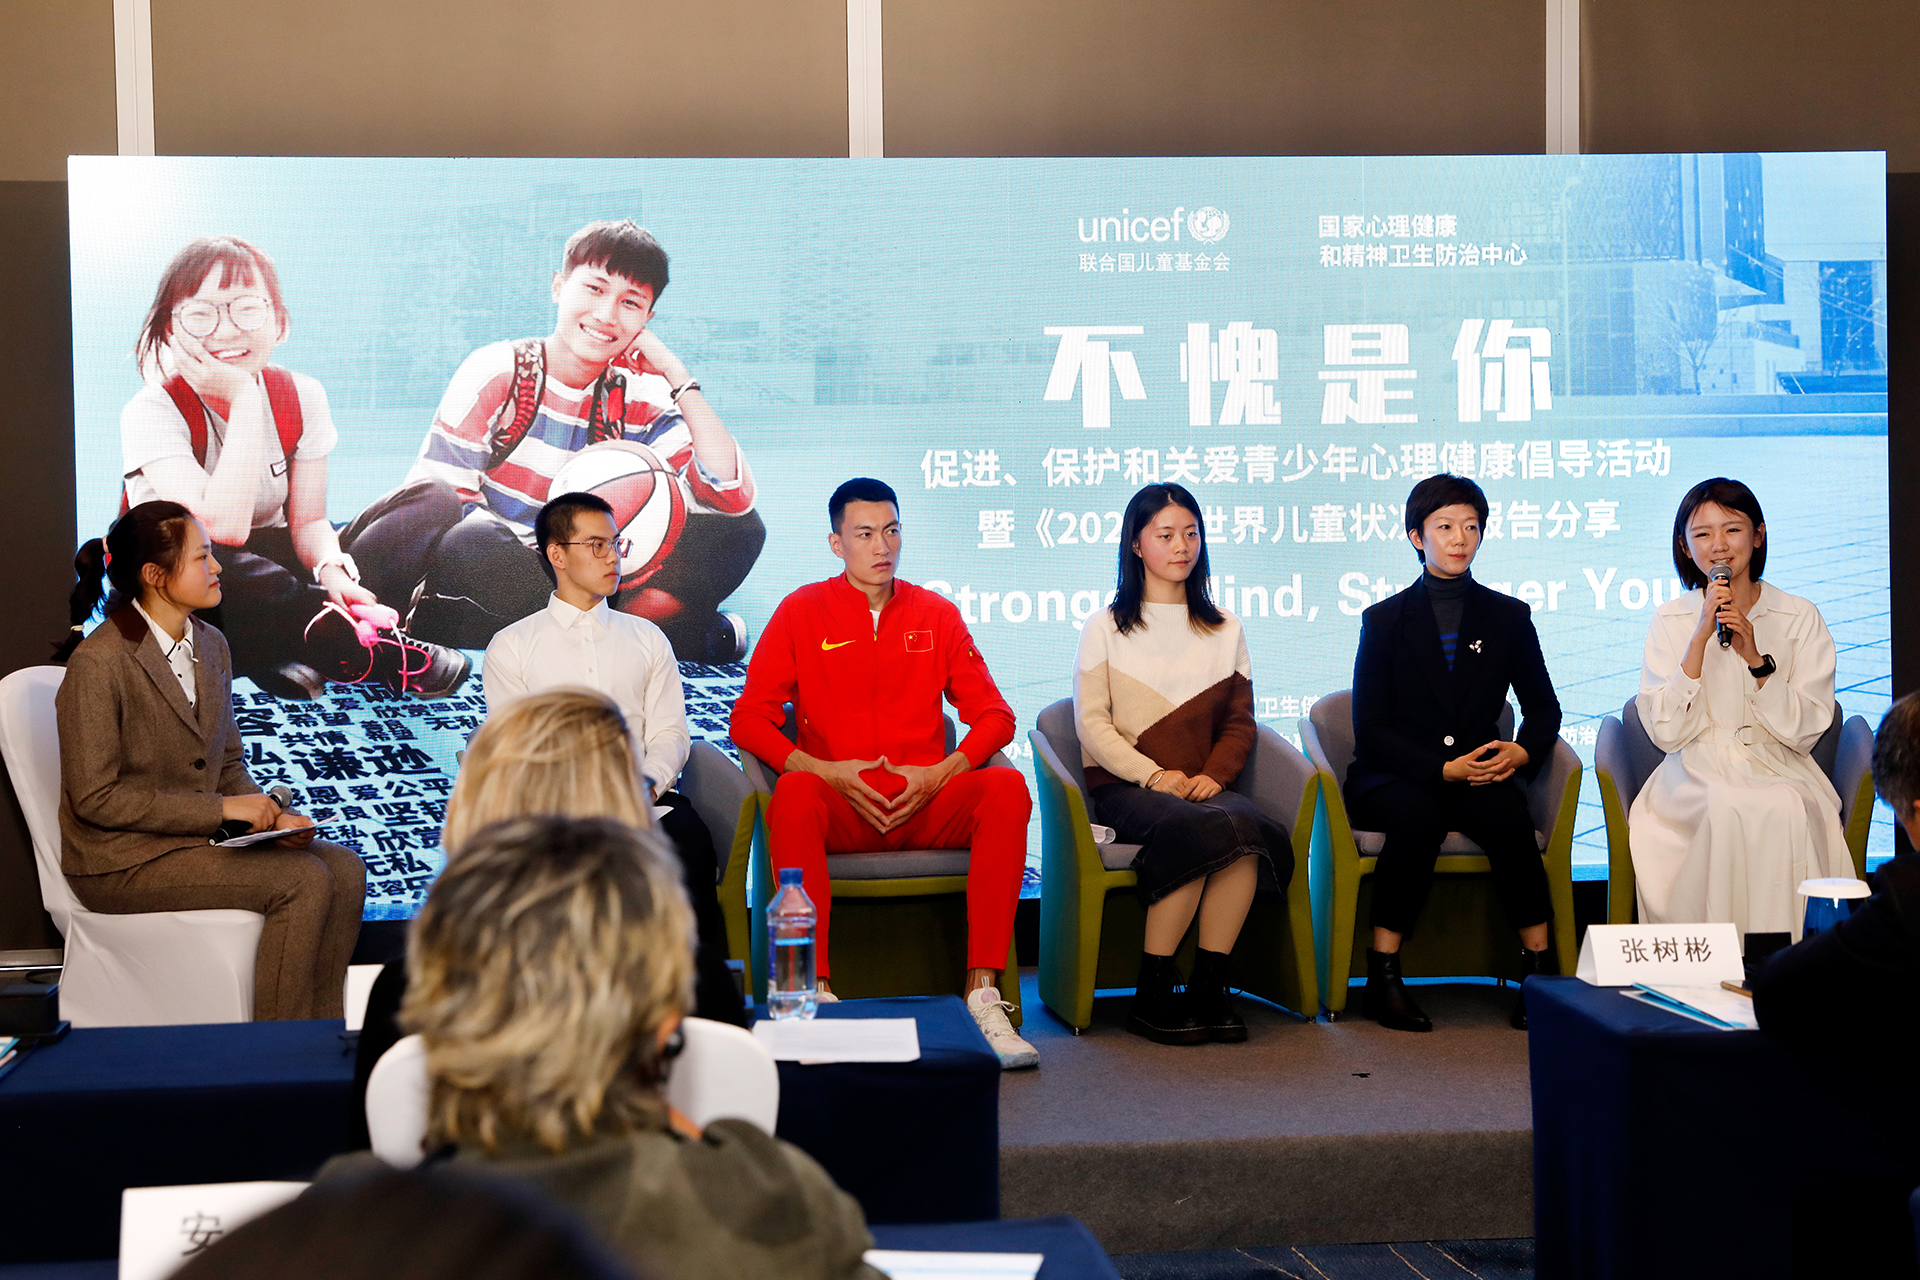 2021年10月12日，在北京举行的一场名为“不愧是你”的青少年心理健康倡导活动上，乒乓球世界冠军牛剑锋（右二）和三级跳远中国最好成绩获得者朱亚明（左三）与青少年围绕心理健康话题展开对话。此次活动由国家心理健康和精神卫生防治中心与联合国儿童基金会驻华办事处共同主办，并得到国家卫生健康委员会疾病预防控制局的指导。